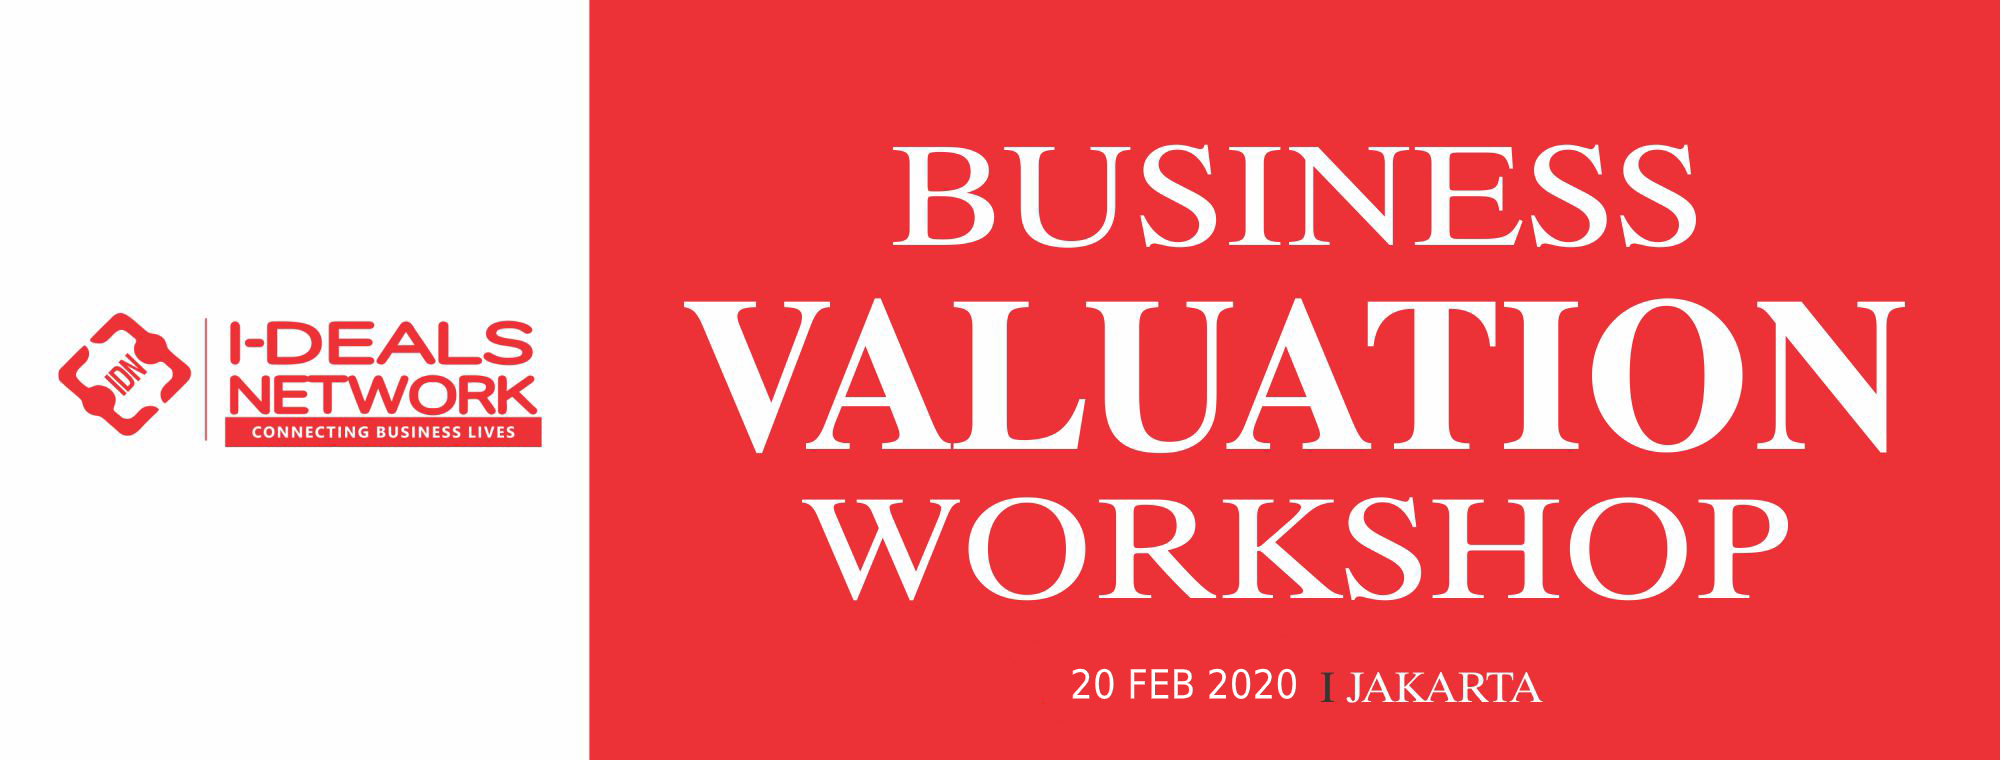 Business Valuation Workshop -